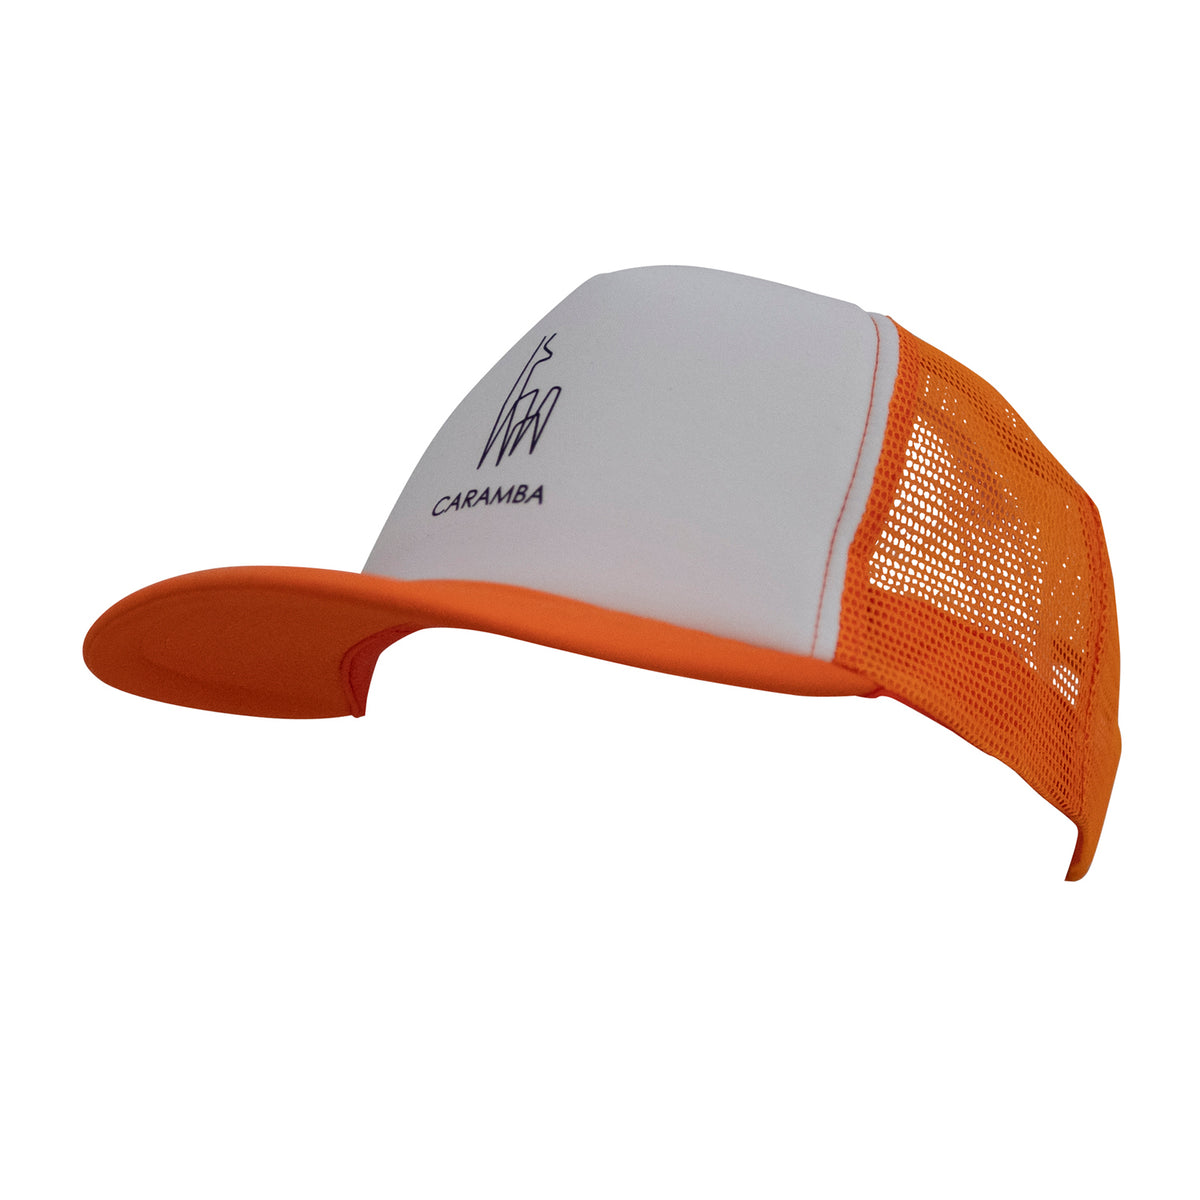 TRUCKER CAP JUNIOR - orange